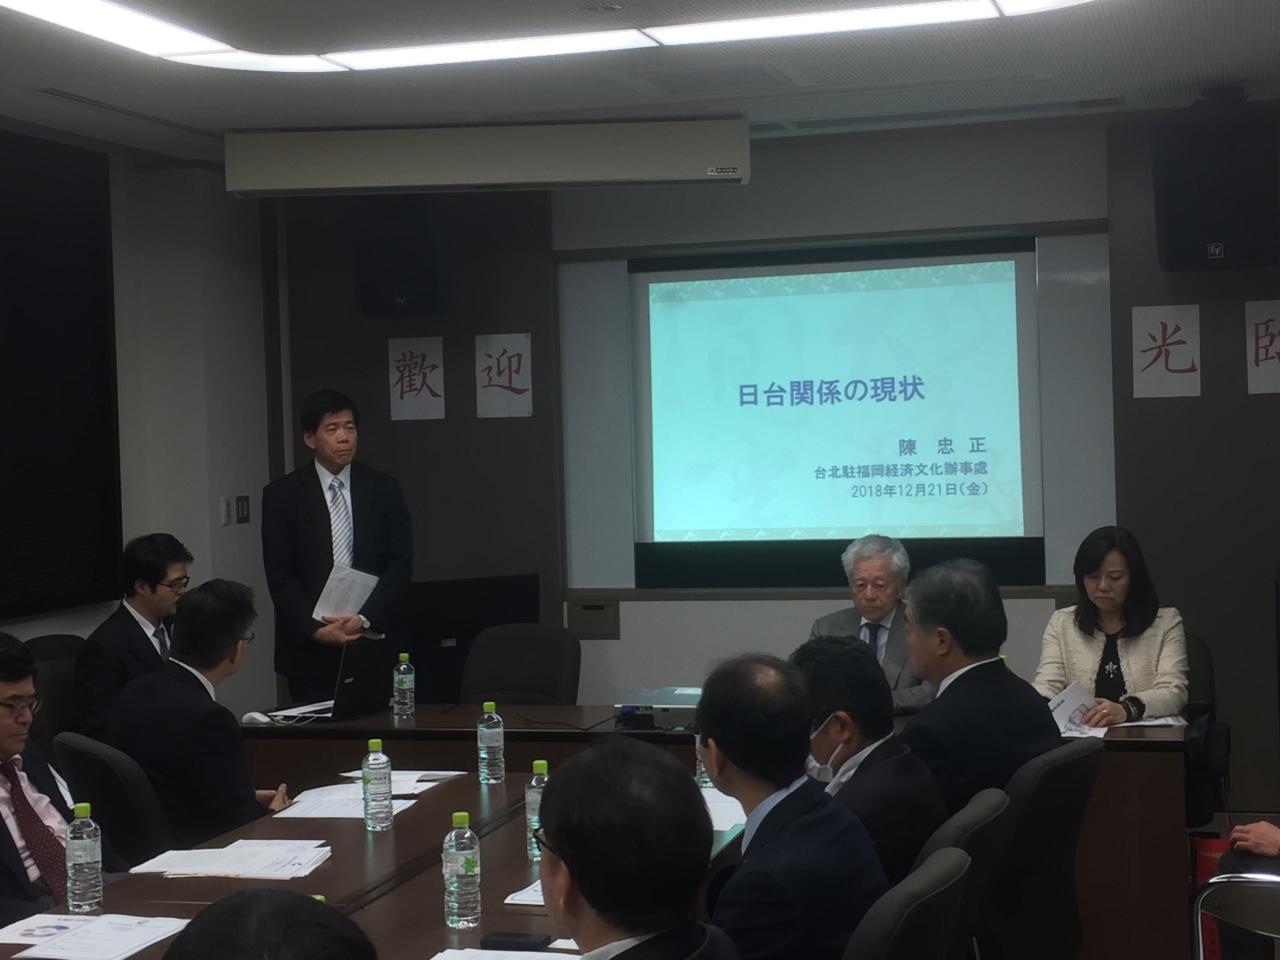 12月21日，本處邀請福岡中小企業經營者協會等一行30人；陳總領事以「日台關係的現狀」為題發表演講。